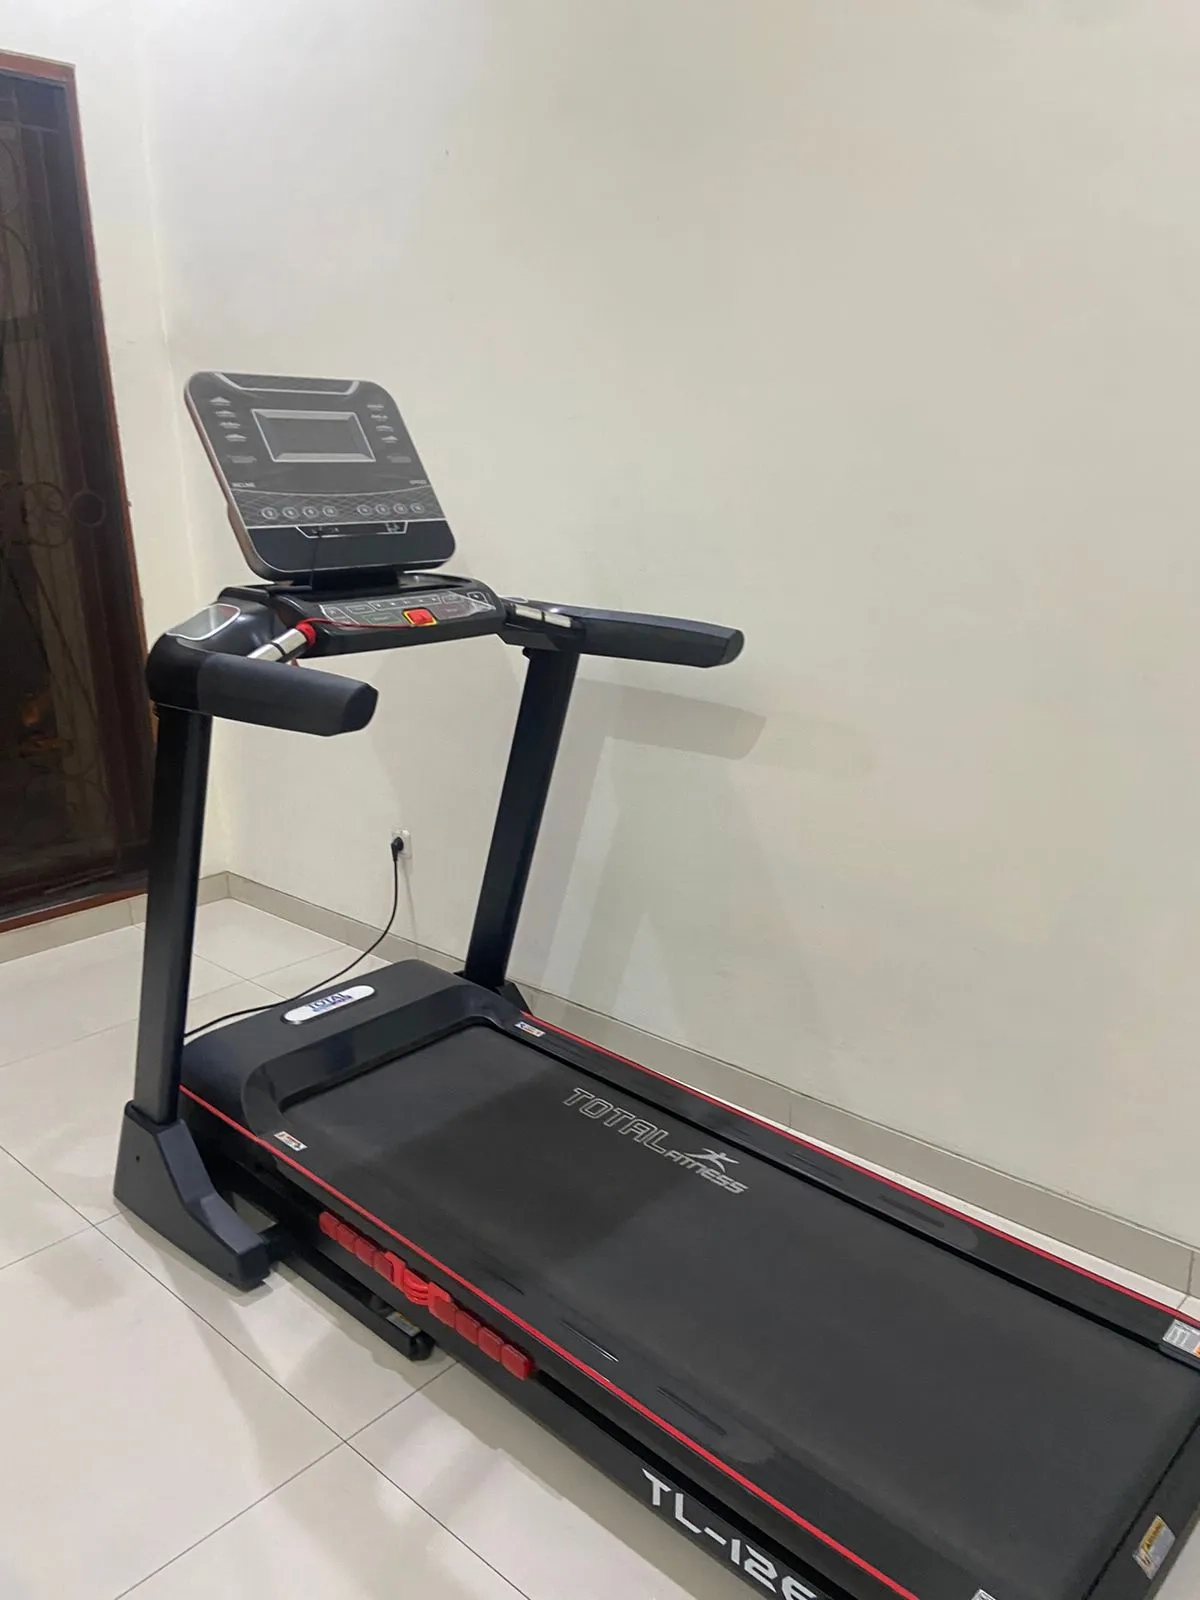 Dijual Treadmill Elektrik Second Murah Surabaya